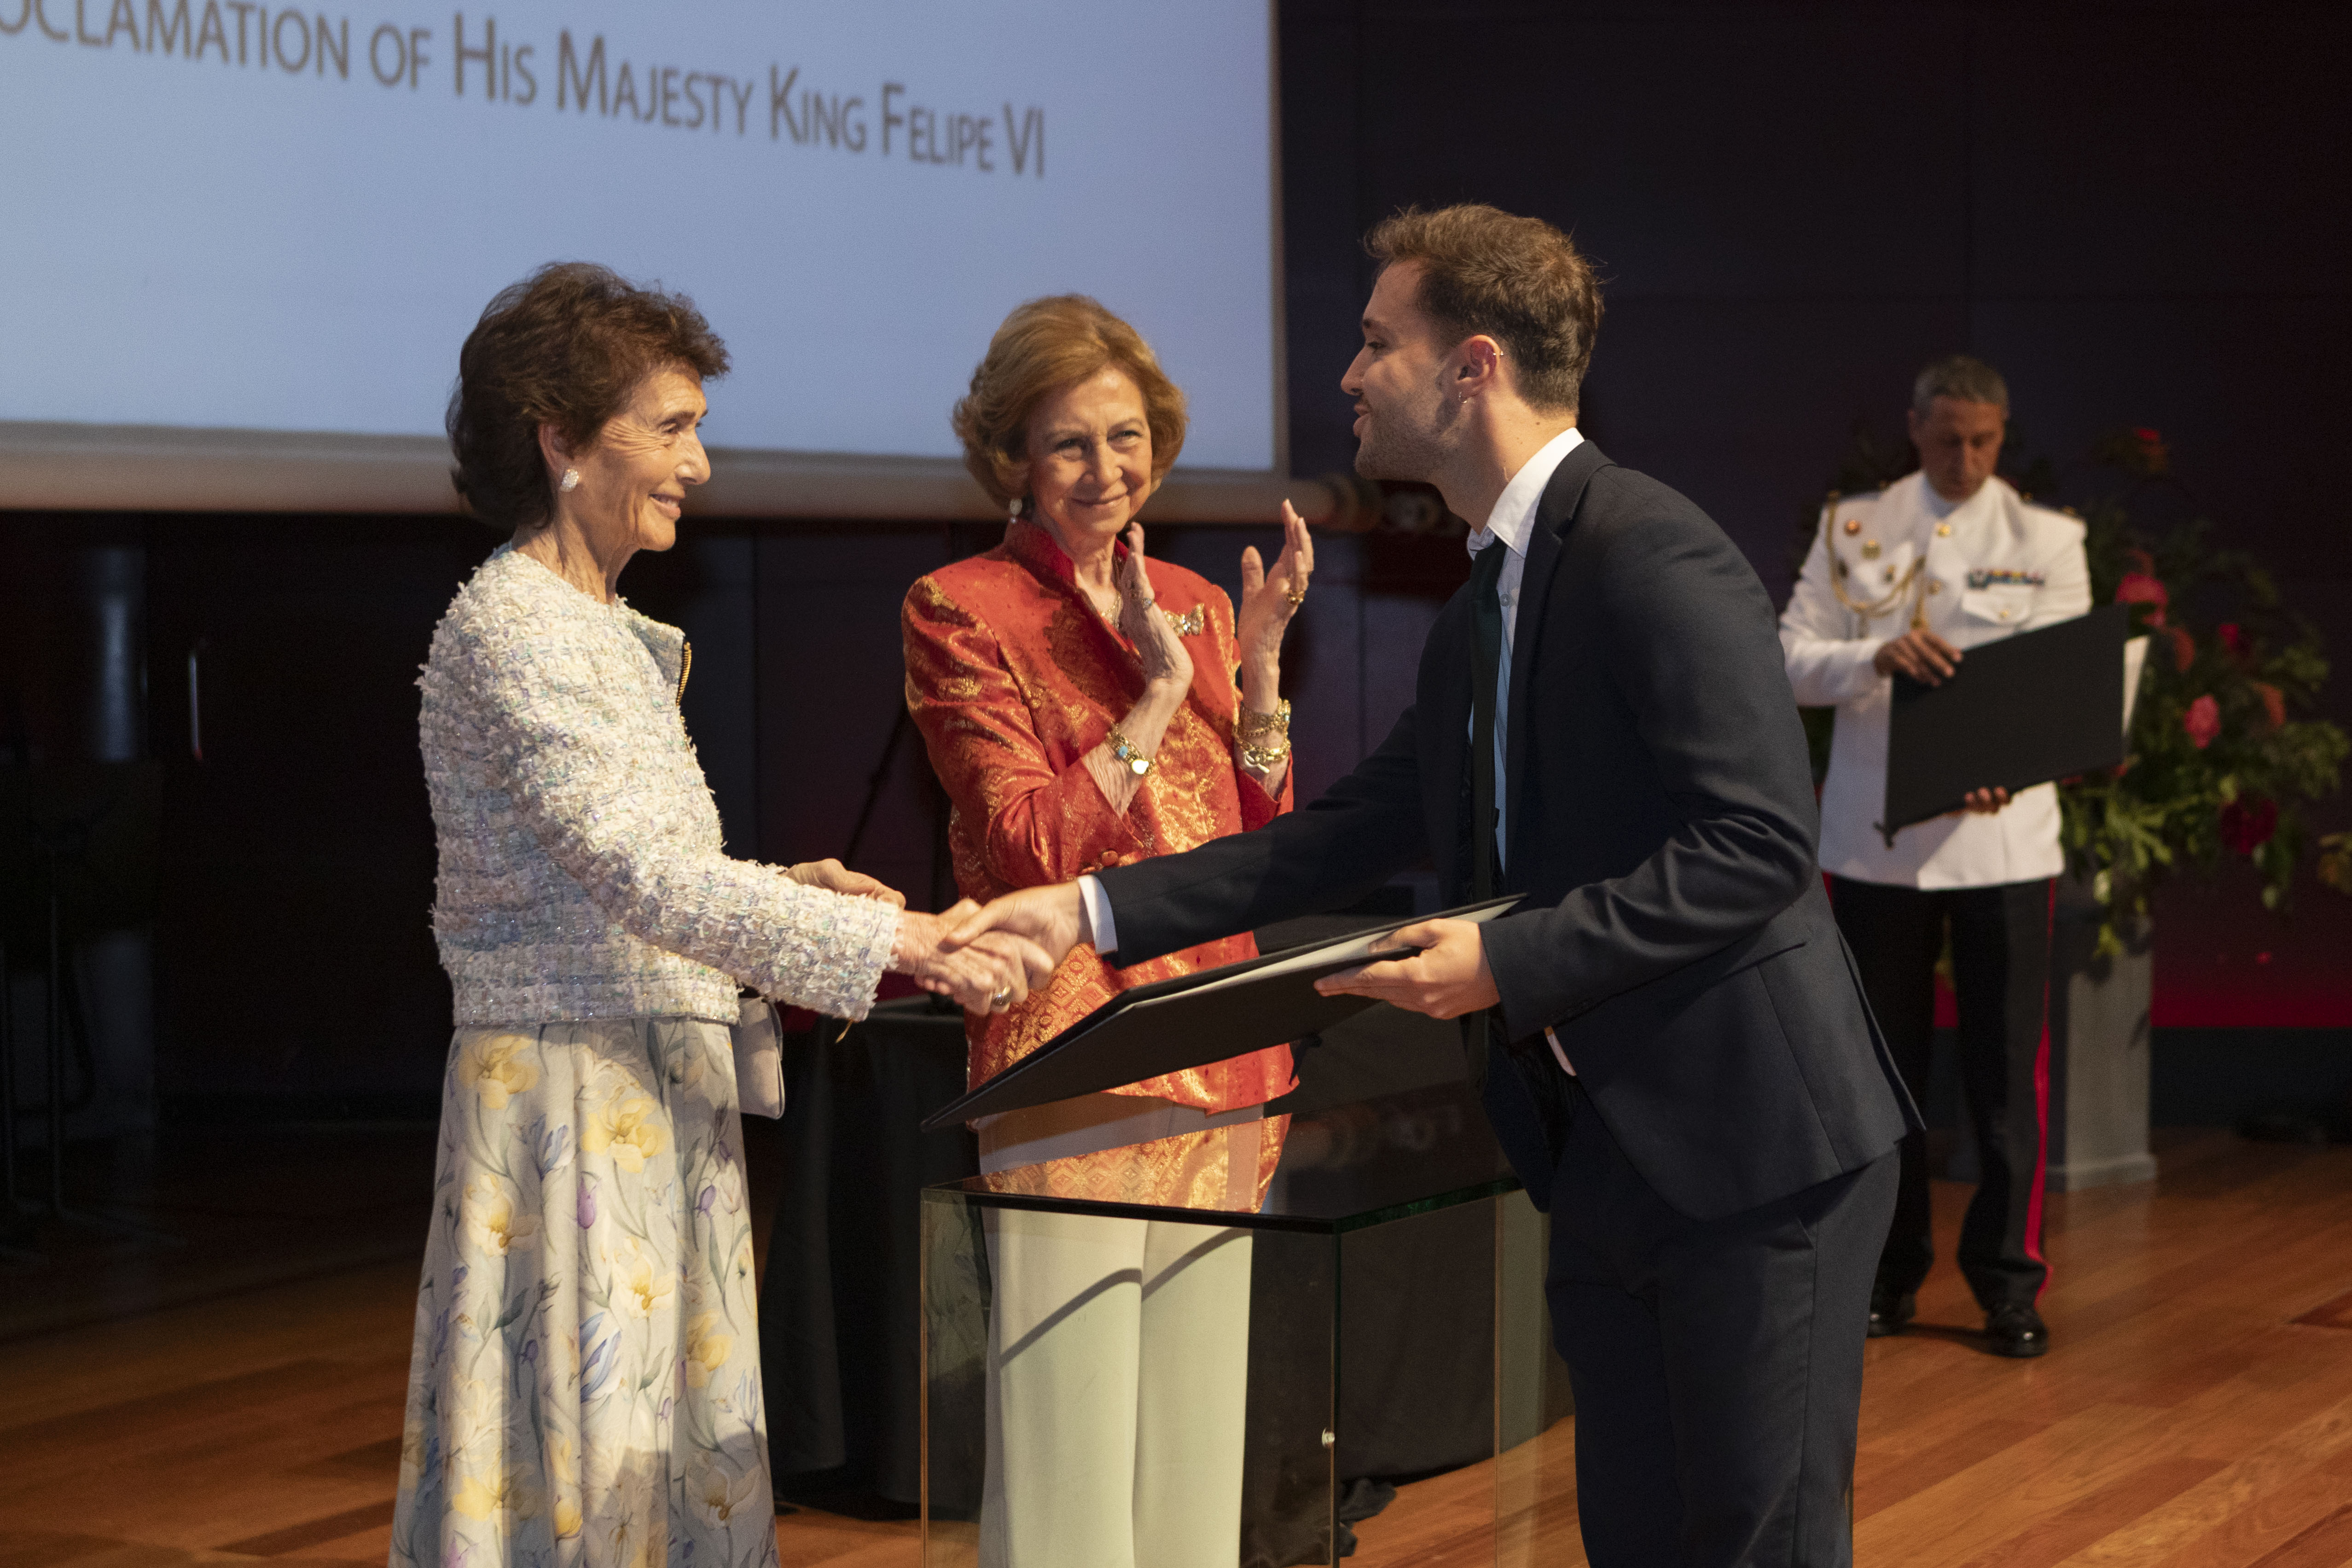 Fidel Fernández rep el diploma a l’Alumne Més Excel·lent de la Càtedra d’Oboè Fundació Damm